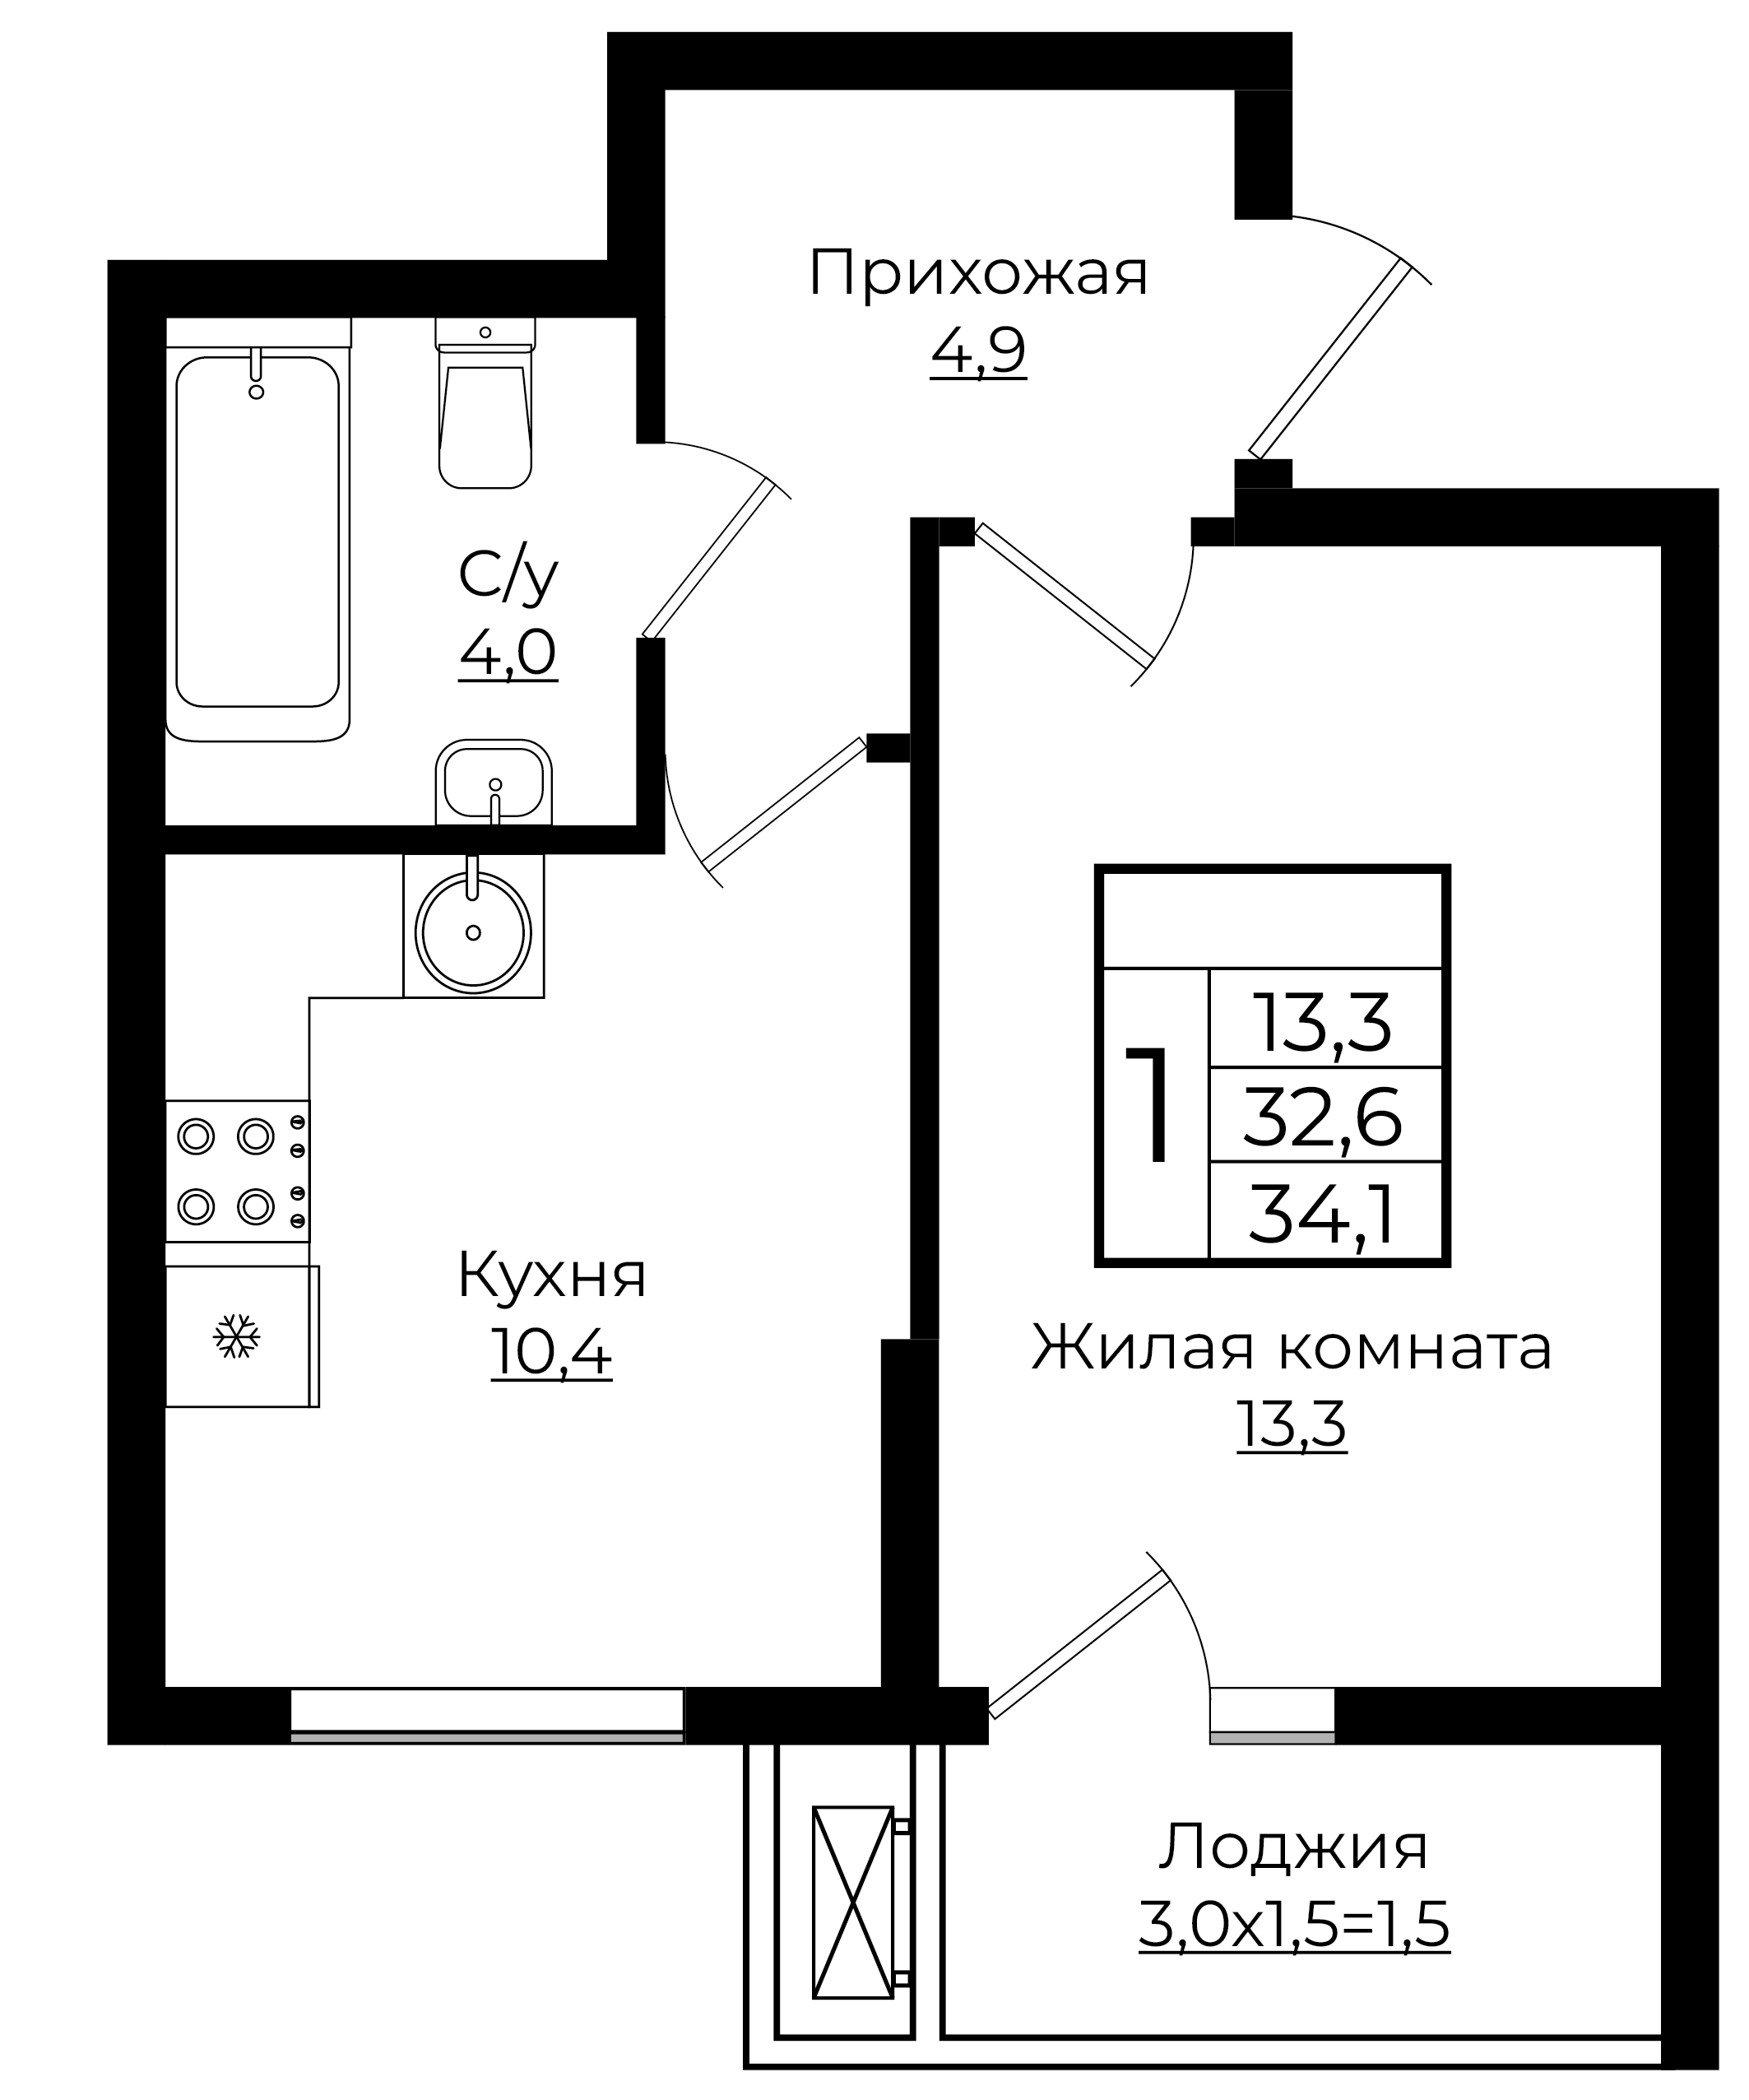 1-комнатная 34.1 м2